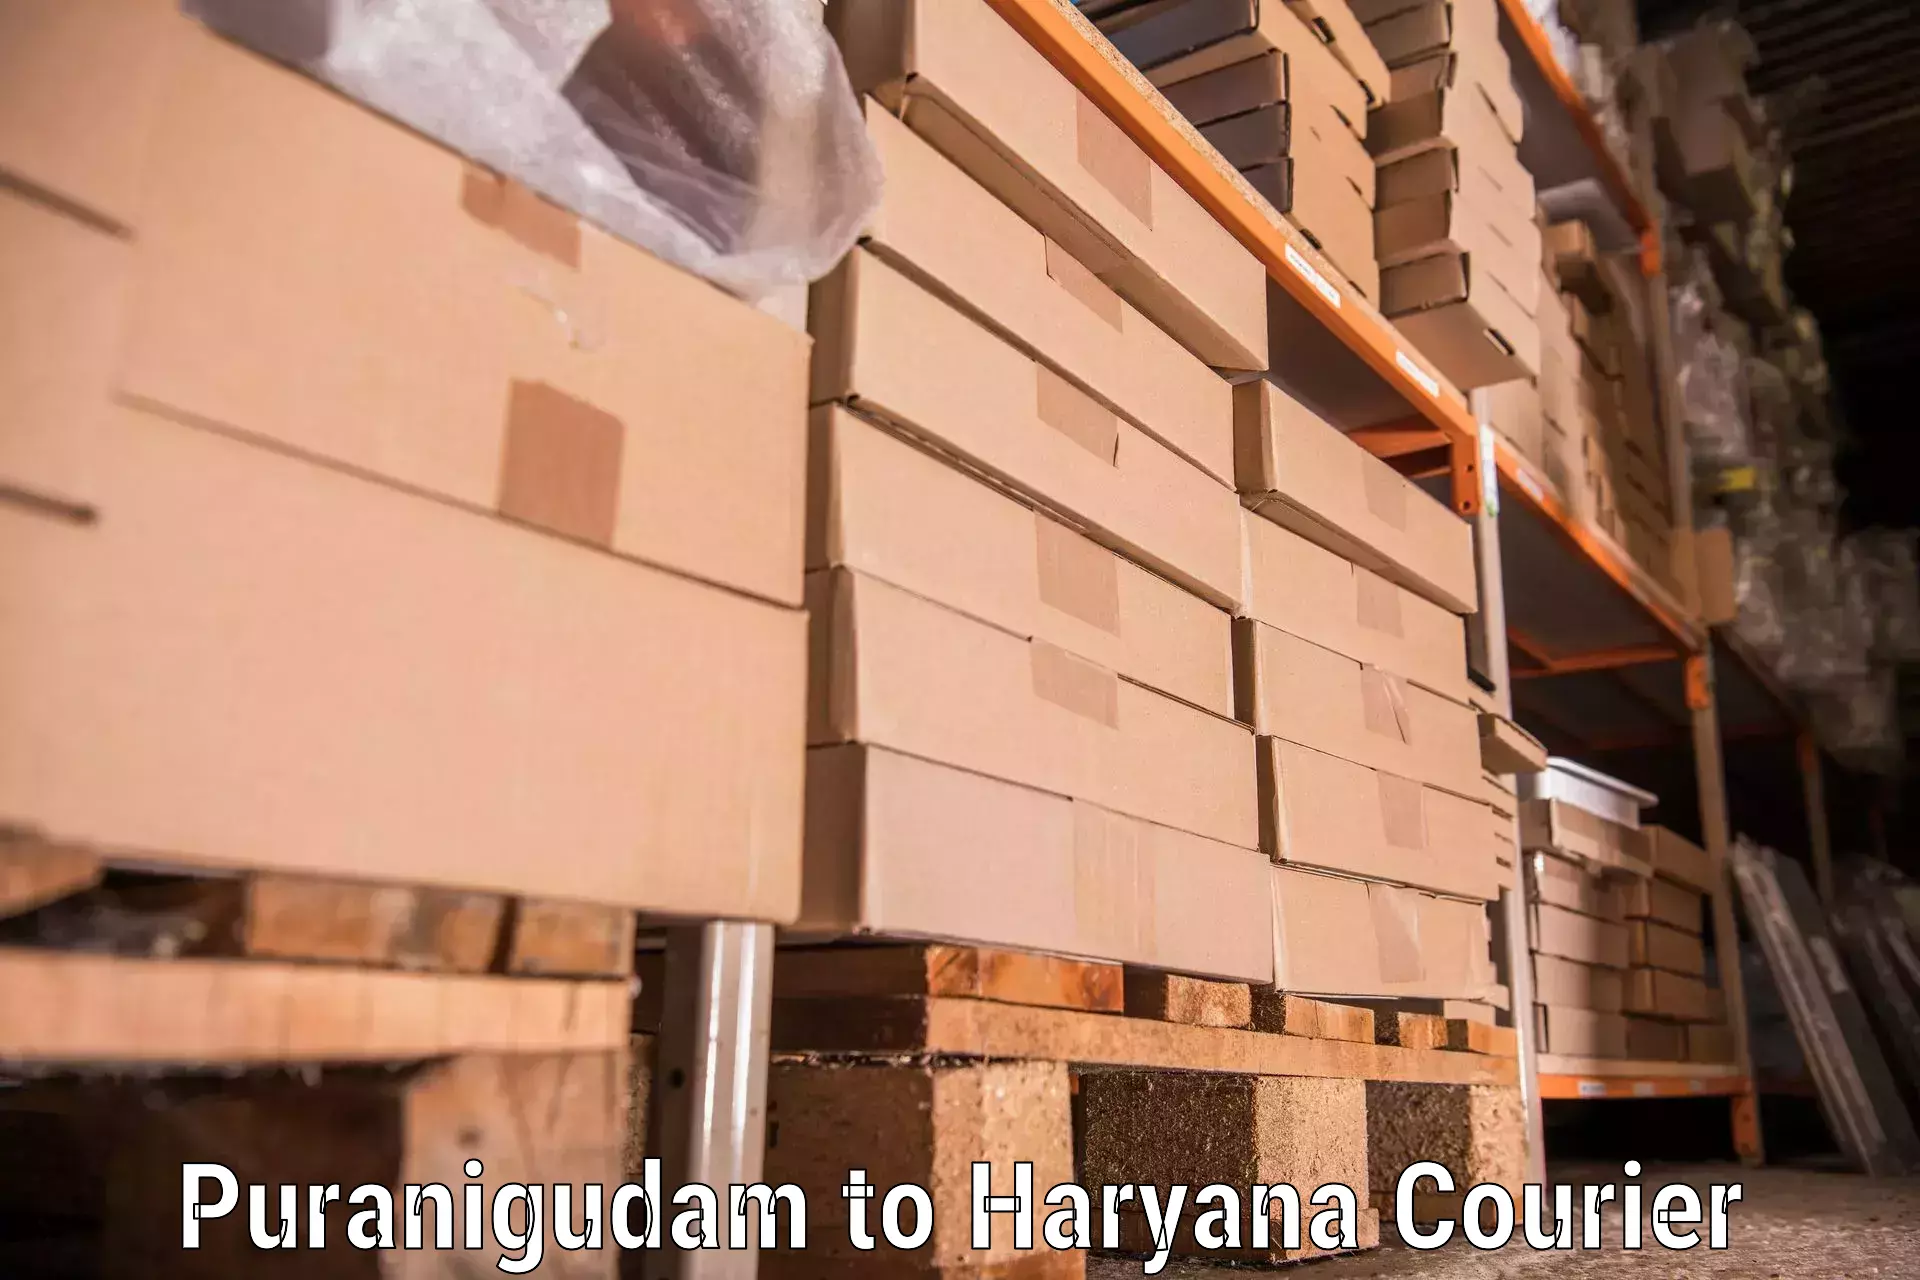 Furniture transport experts Puranigudam to Kurukshetra University